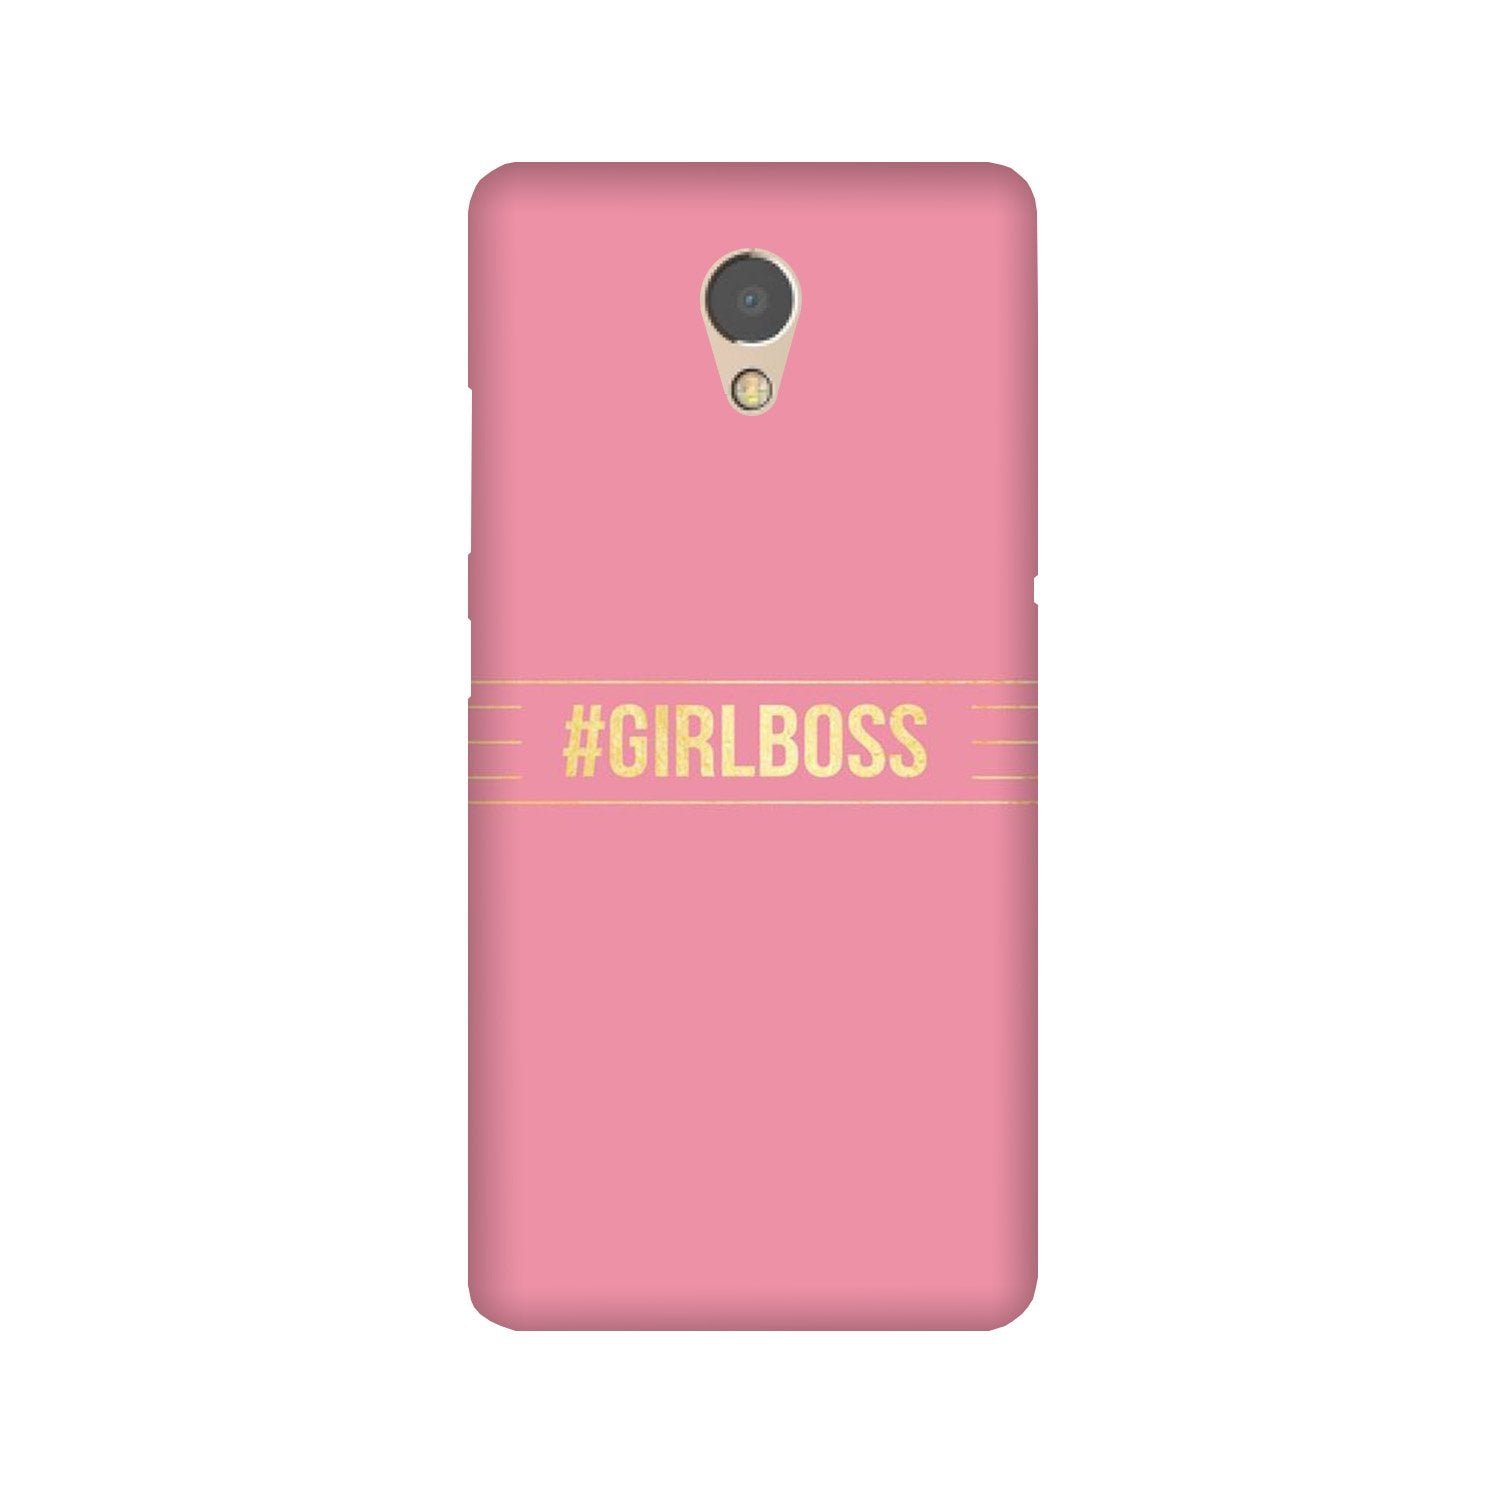 Girl Boss Pink Case for Lenovo P2 (Design No. 263)